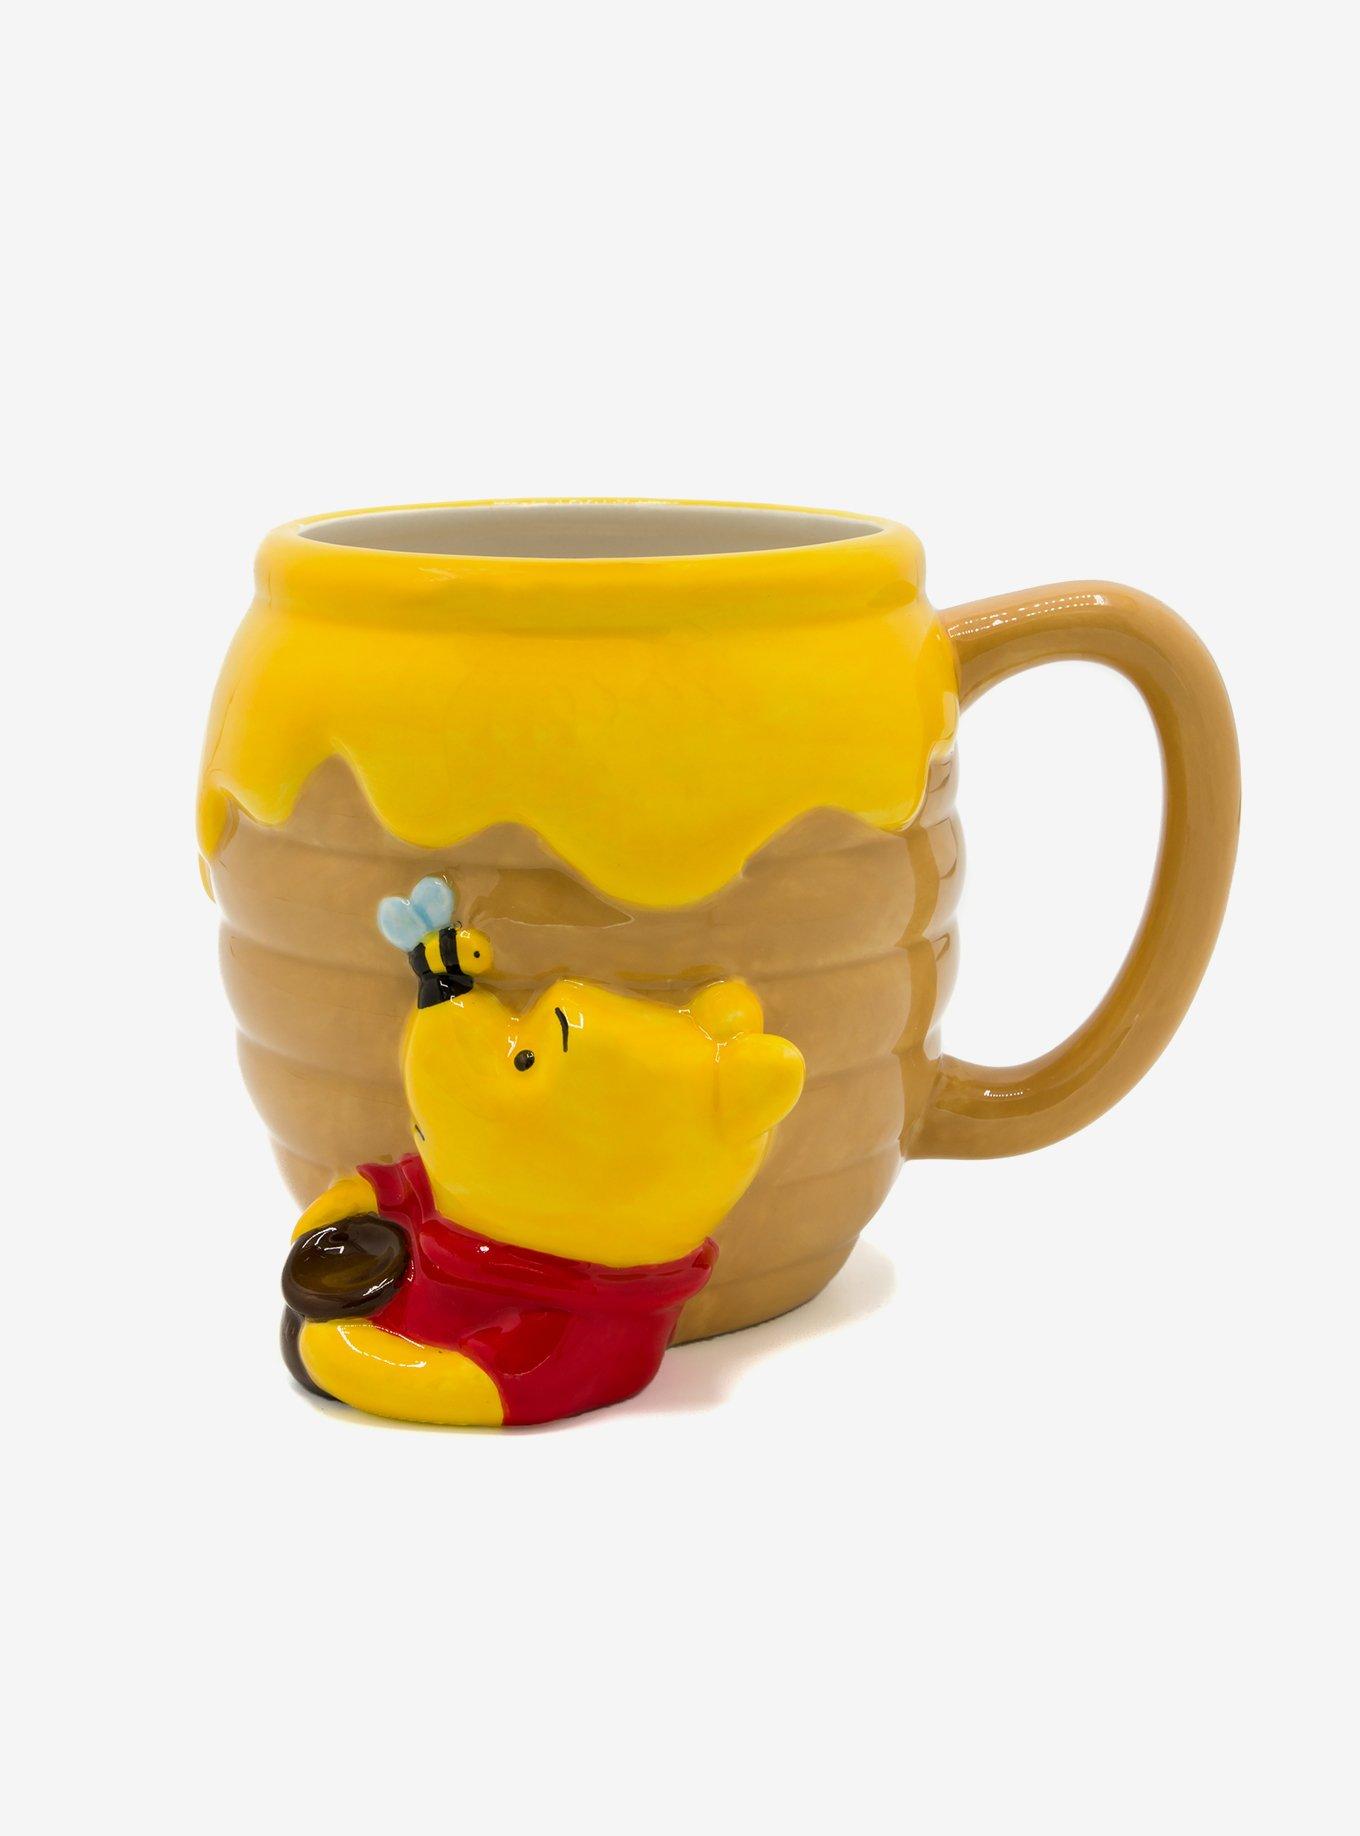 Winnie the Pooh Mug